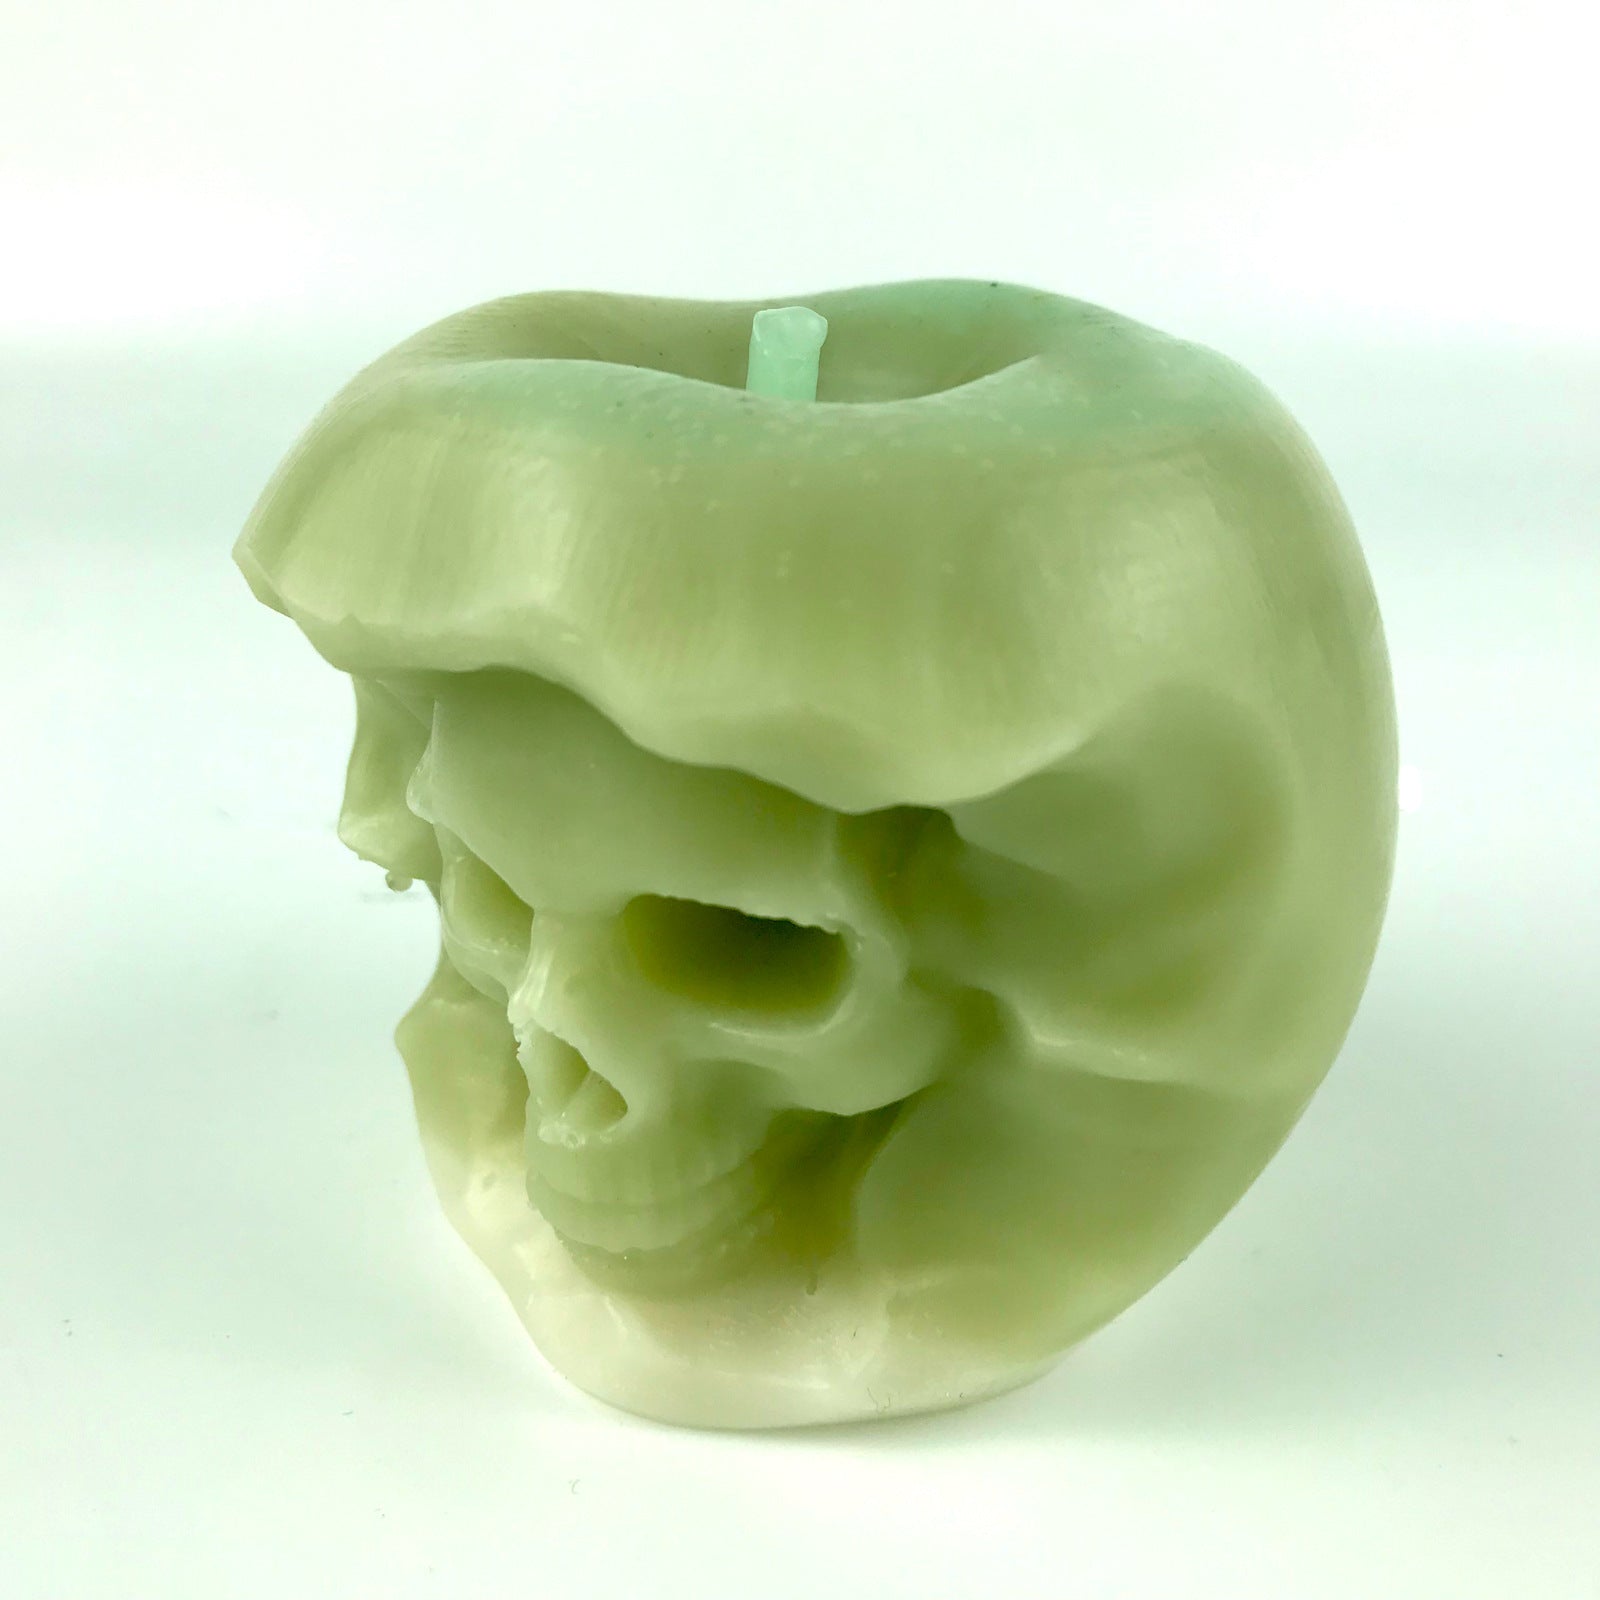 Apple Shape Skull Ornament Resin Mold